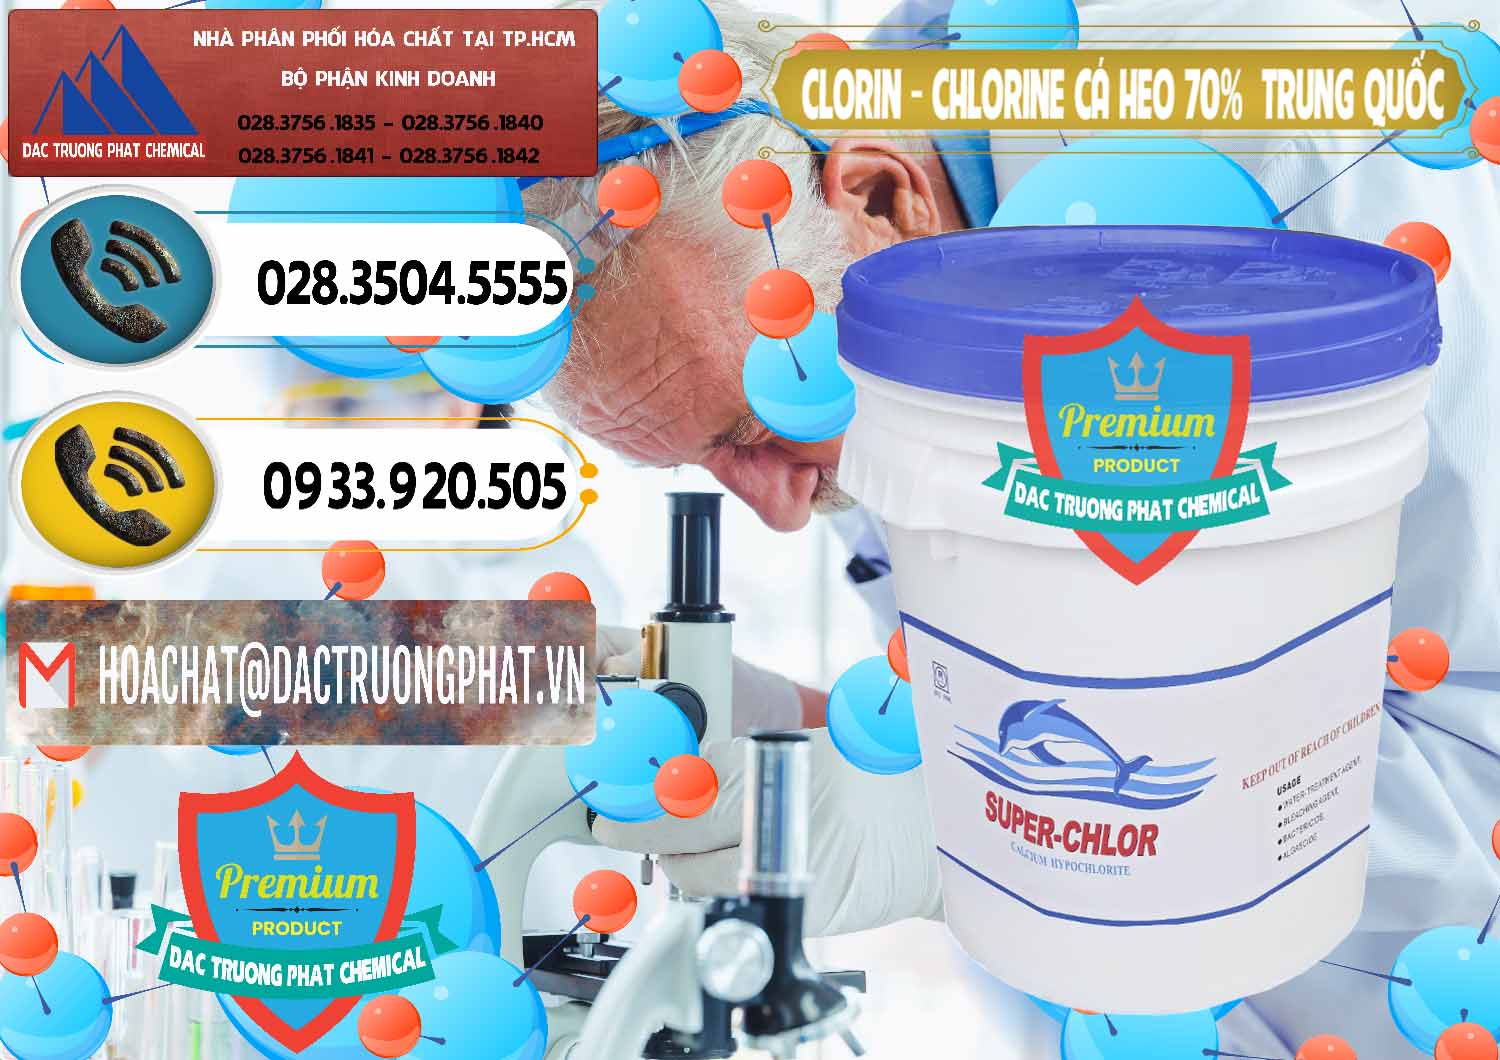 Cty chuyên cung cấp & bán Clorin - Chlorine Cá Heo 70% Super Chlor Nắp Xanh Trung Quốc China - 0209 - Cung cấp _ nhập khẩu hóa chất tại TP.HCM - hoachatdetnhuom.vn